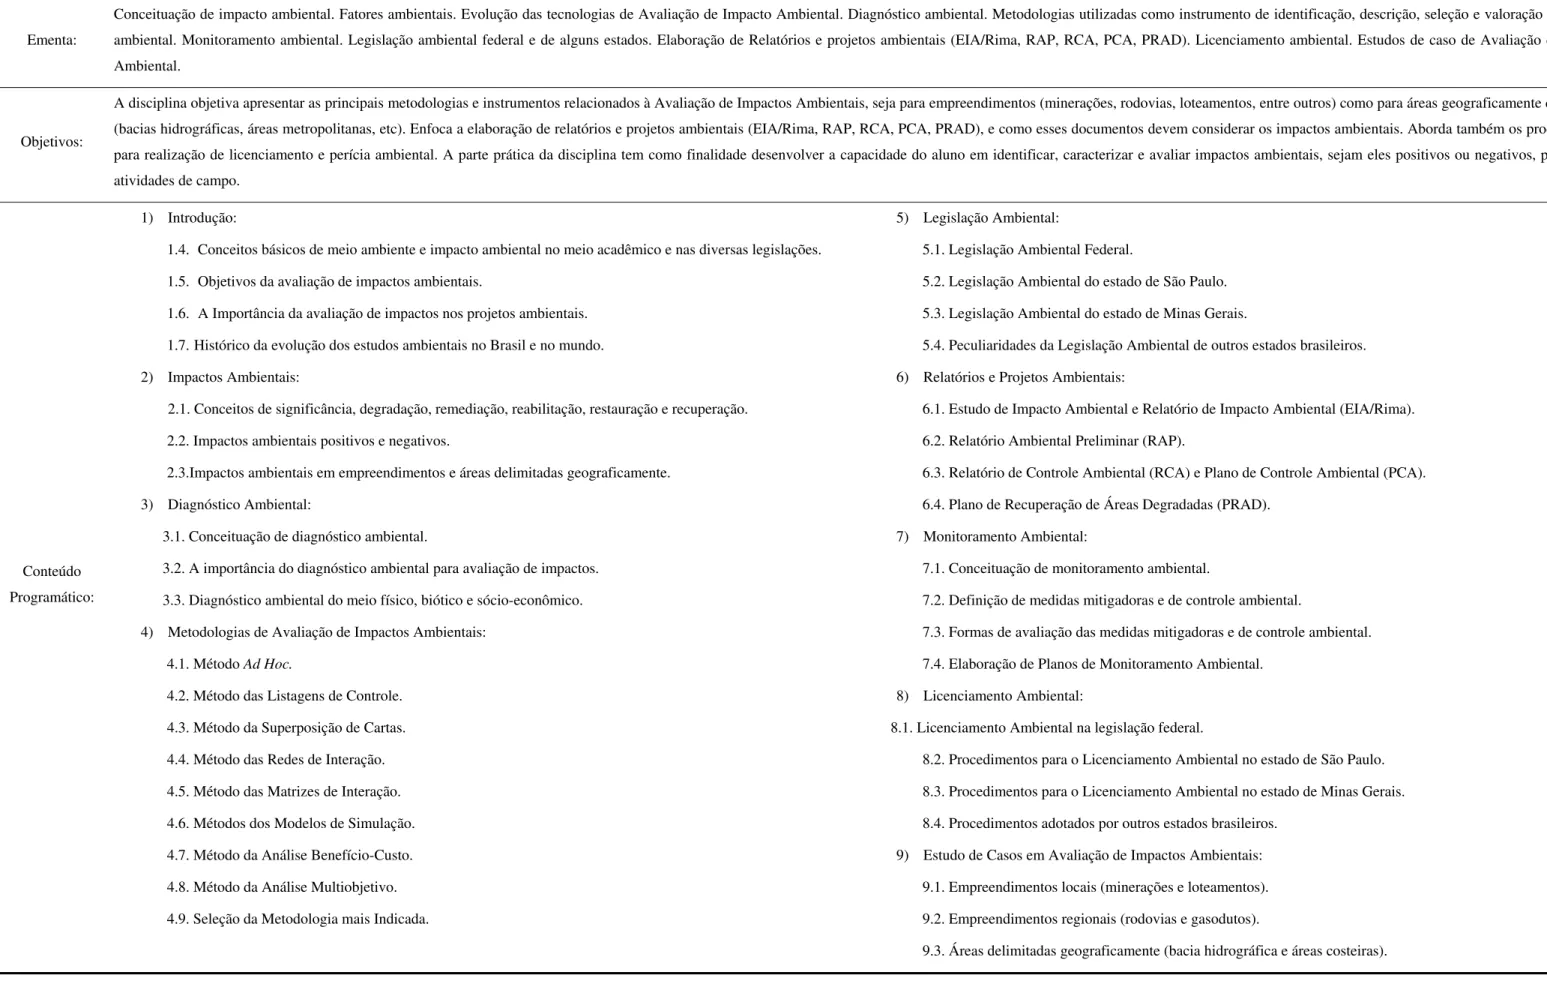 Tabela 6: Programa de ensino da disciplina Técnicas de Avaliação de Impactos Ambientais do UNIPINHAL